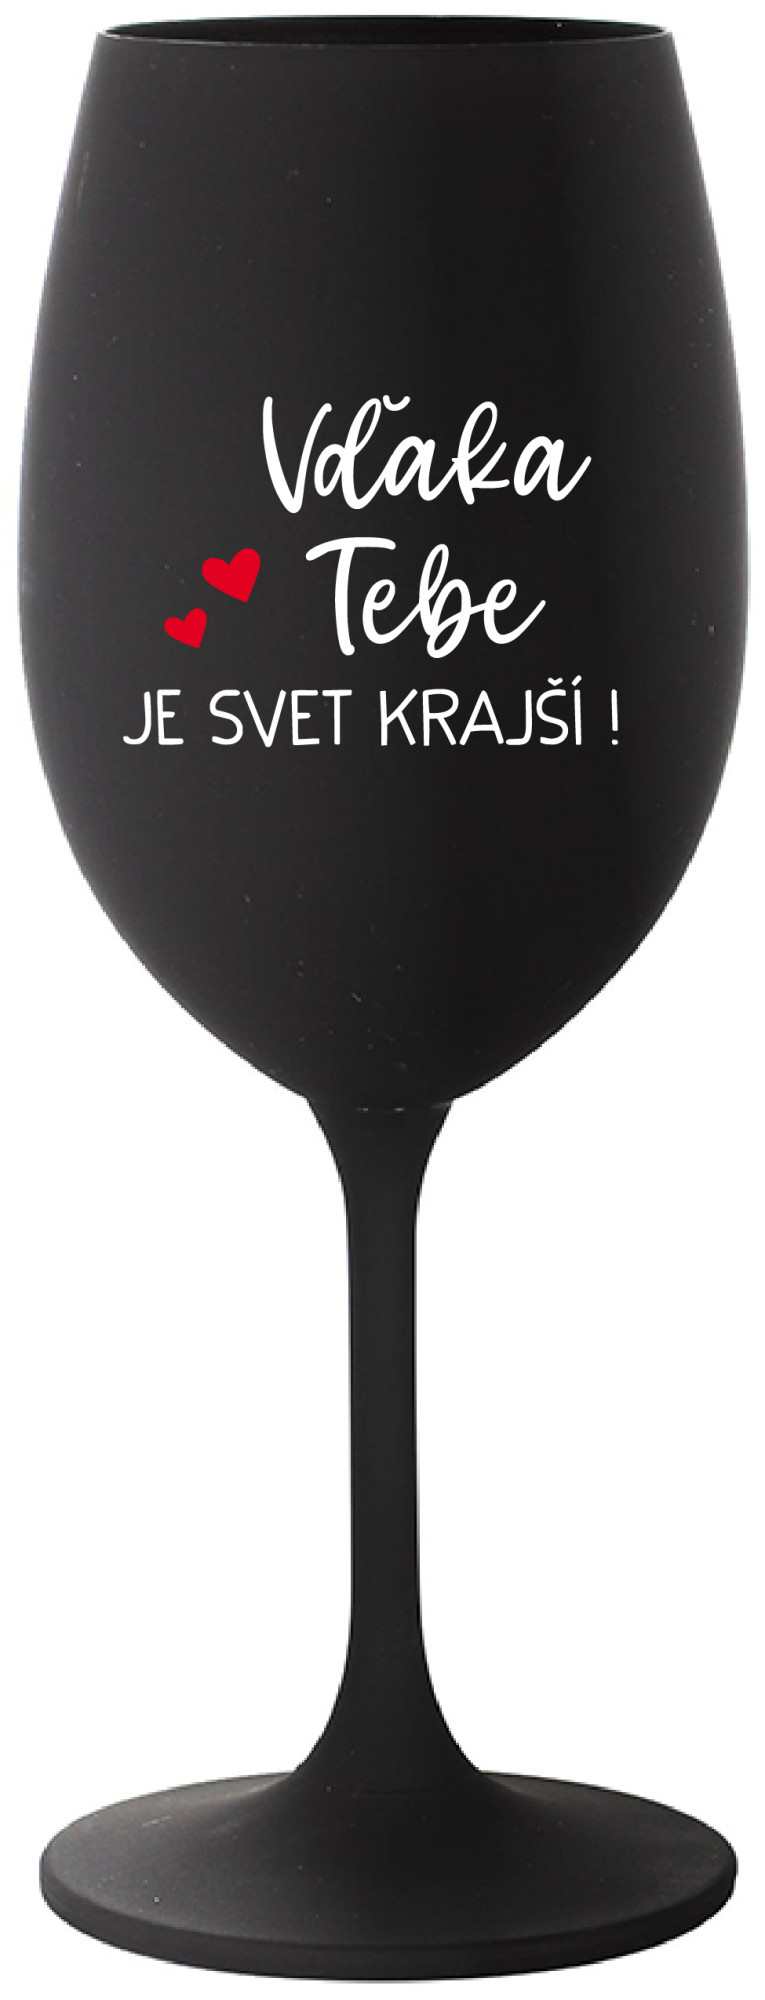 VĎAKA TEBE JE SVET KRAJŠÍ! - černá sklenice na víno 350 ml